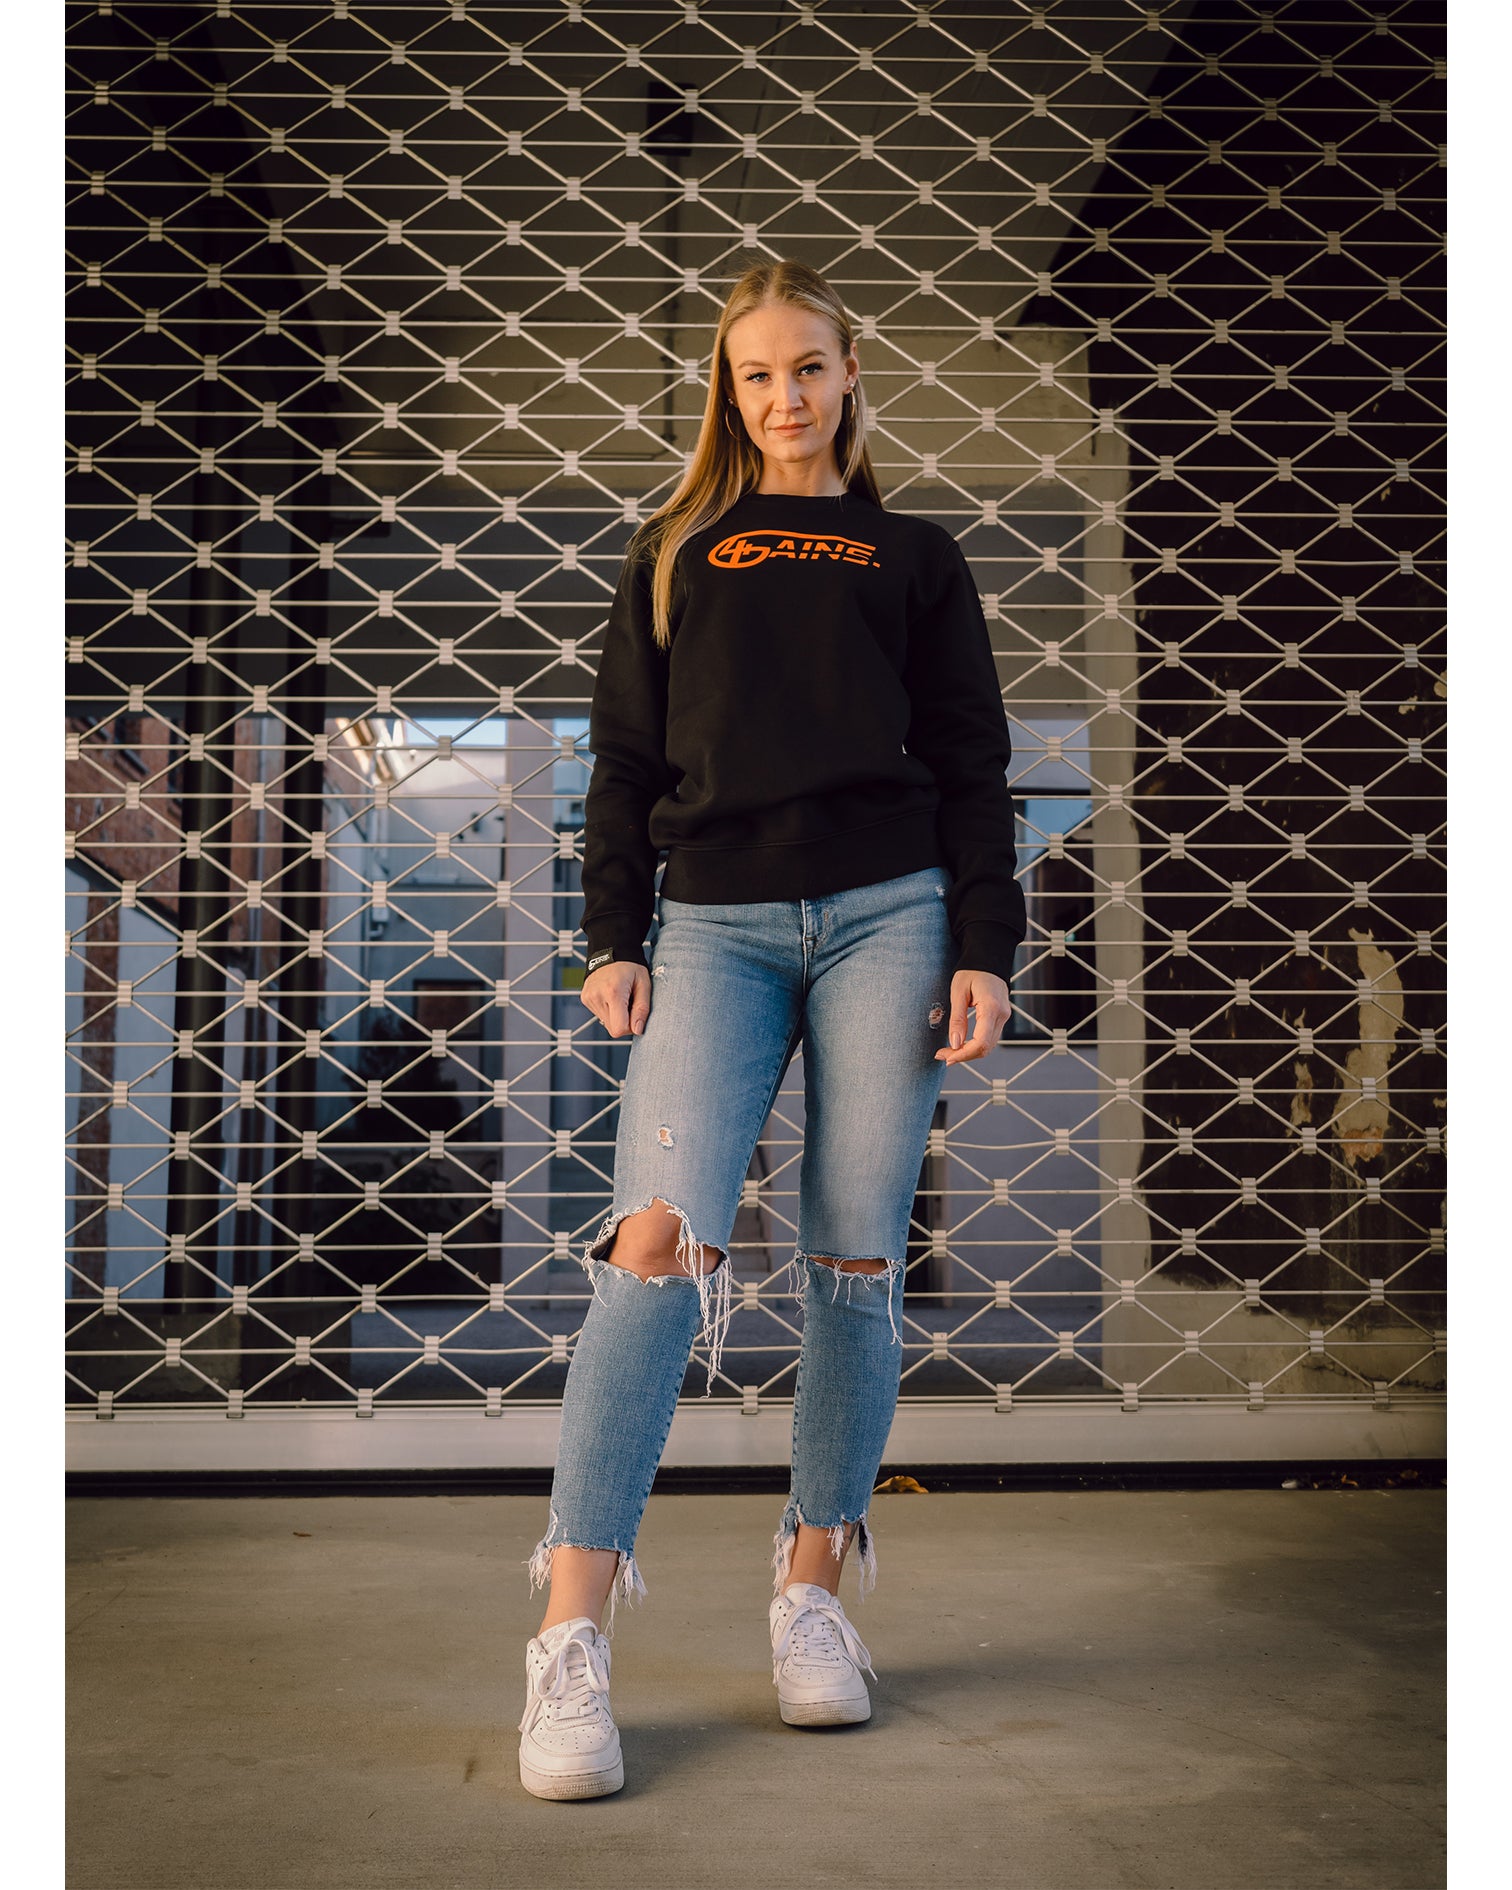 Weibliches Model steht vor einem Rolltor und hat 4GAINS unisex Sweater an in black/orange